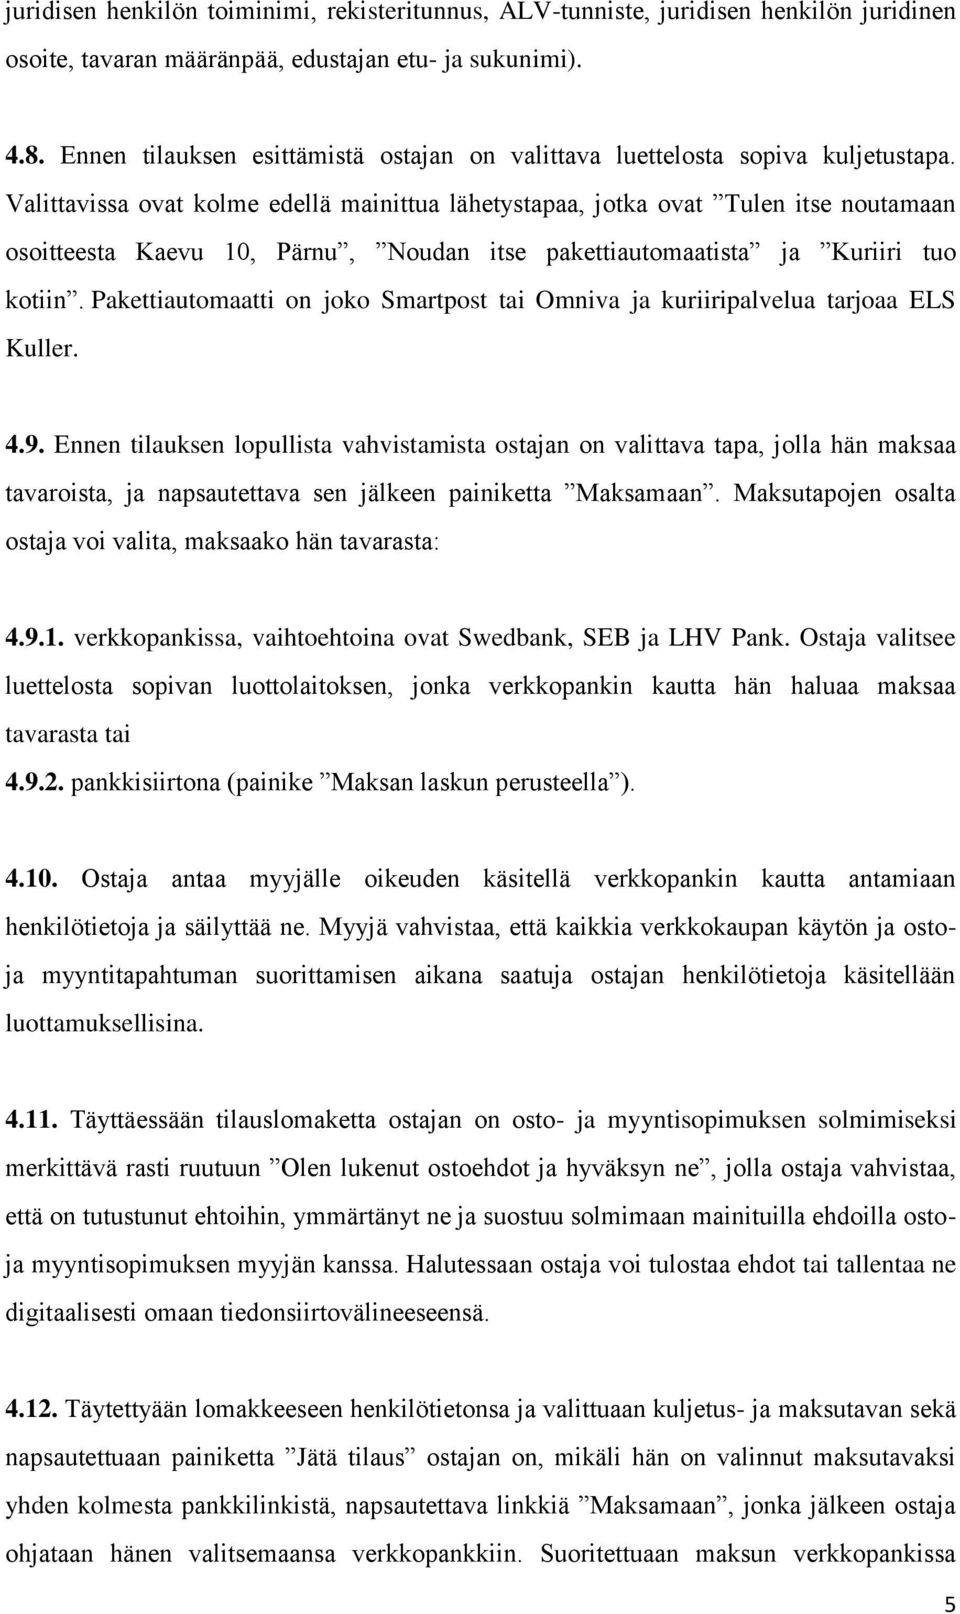 Valittavissa ovat kolme edellä mainittua lähetystapaa, jotka ovat Tulen itse noutamaan osoitteesta Kaevu 10, Pärnu, Noudan itse pakettiautomaatista ja Kuriiri tuo kotiin.